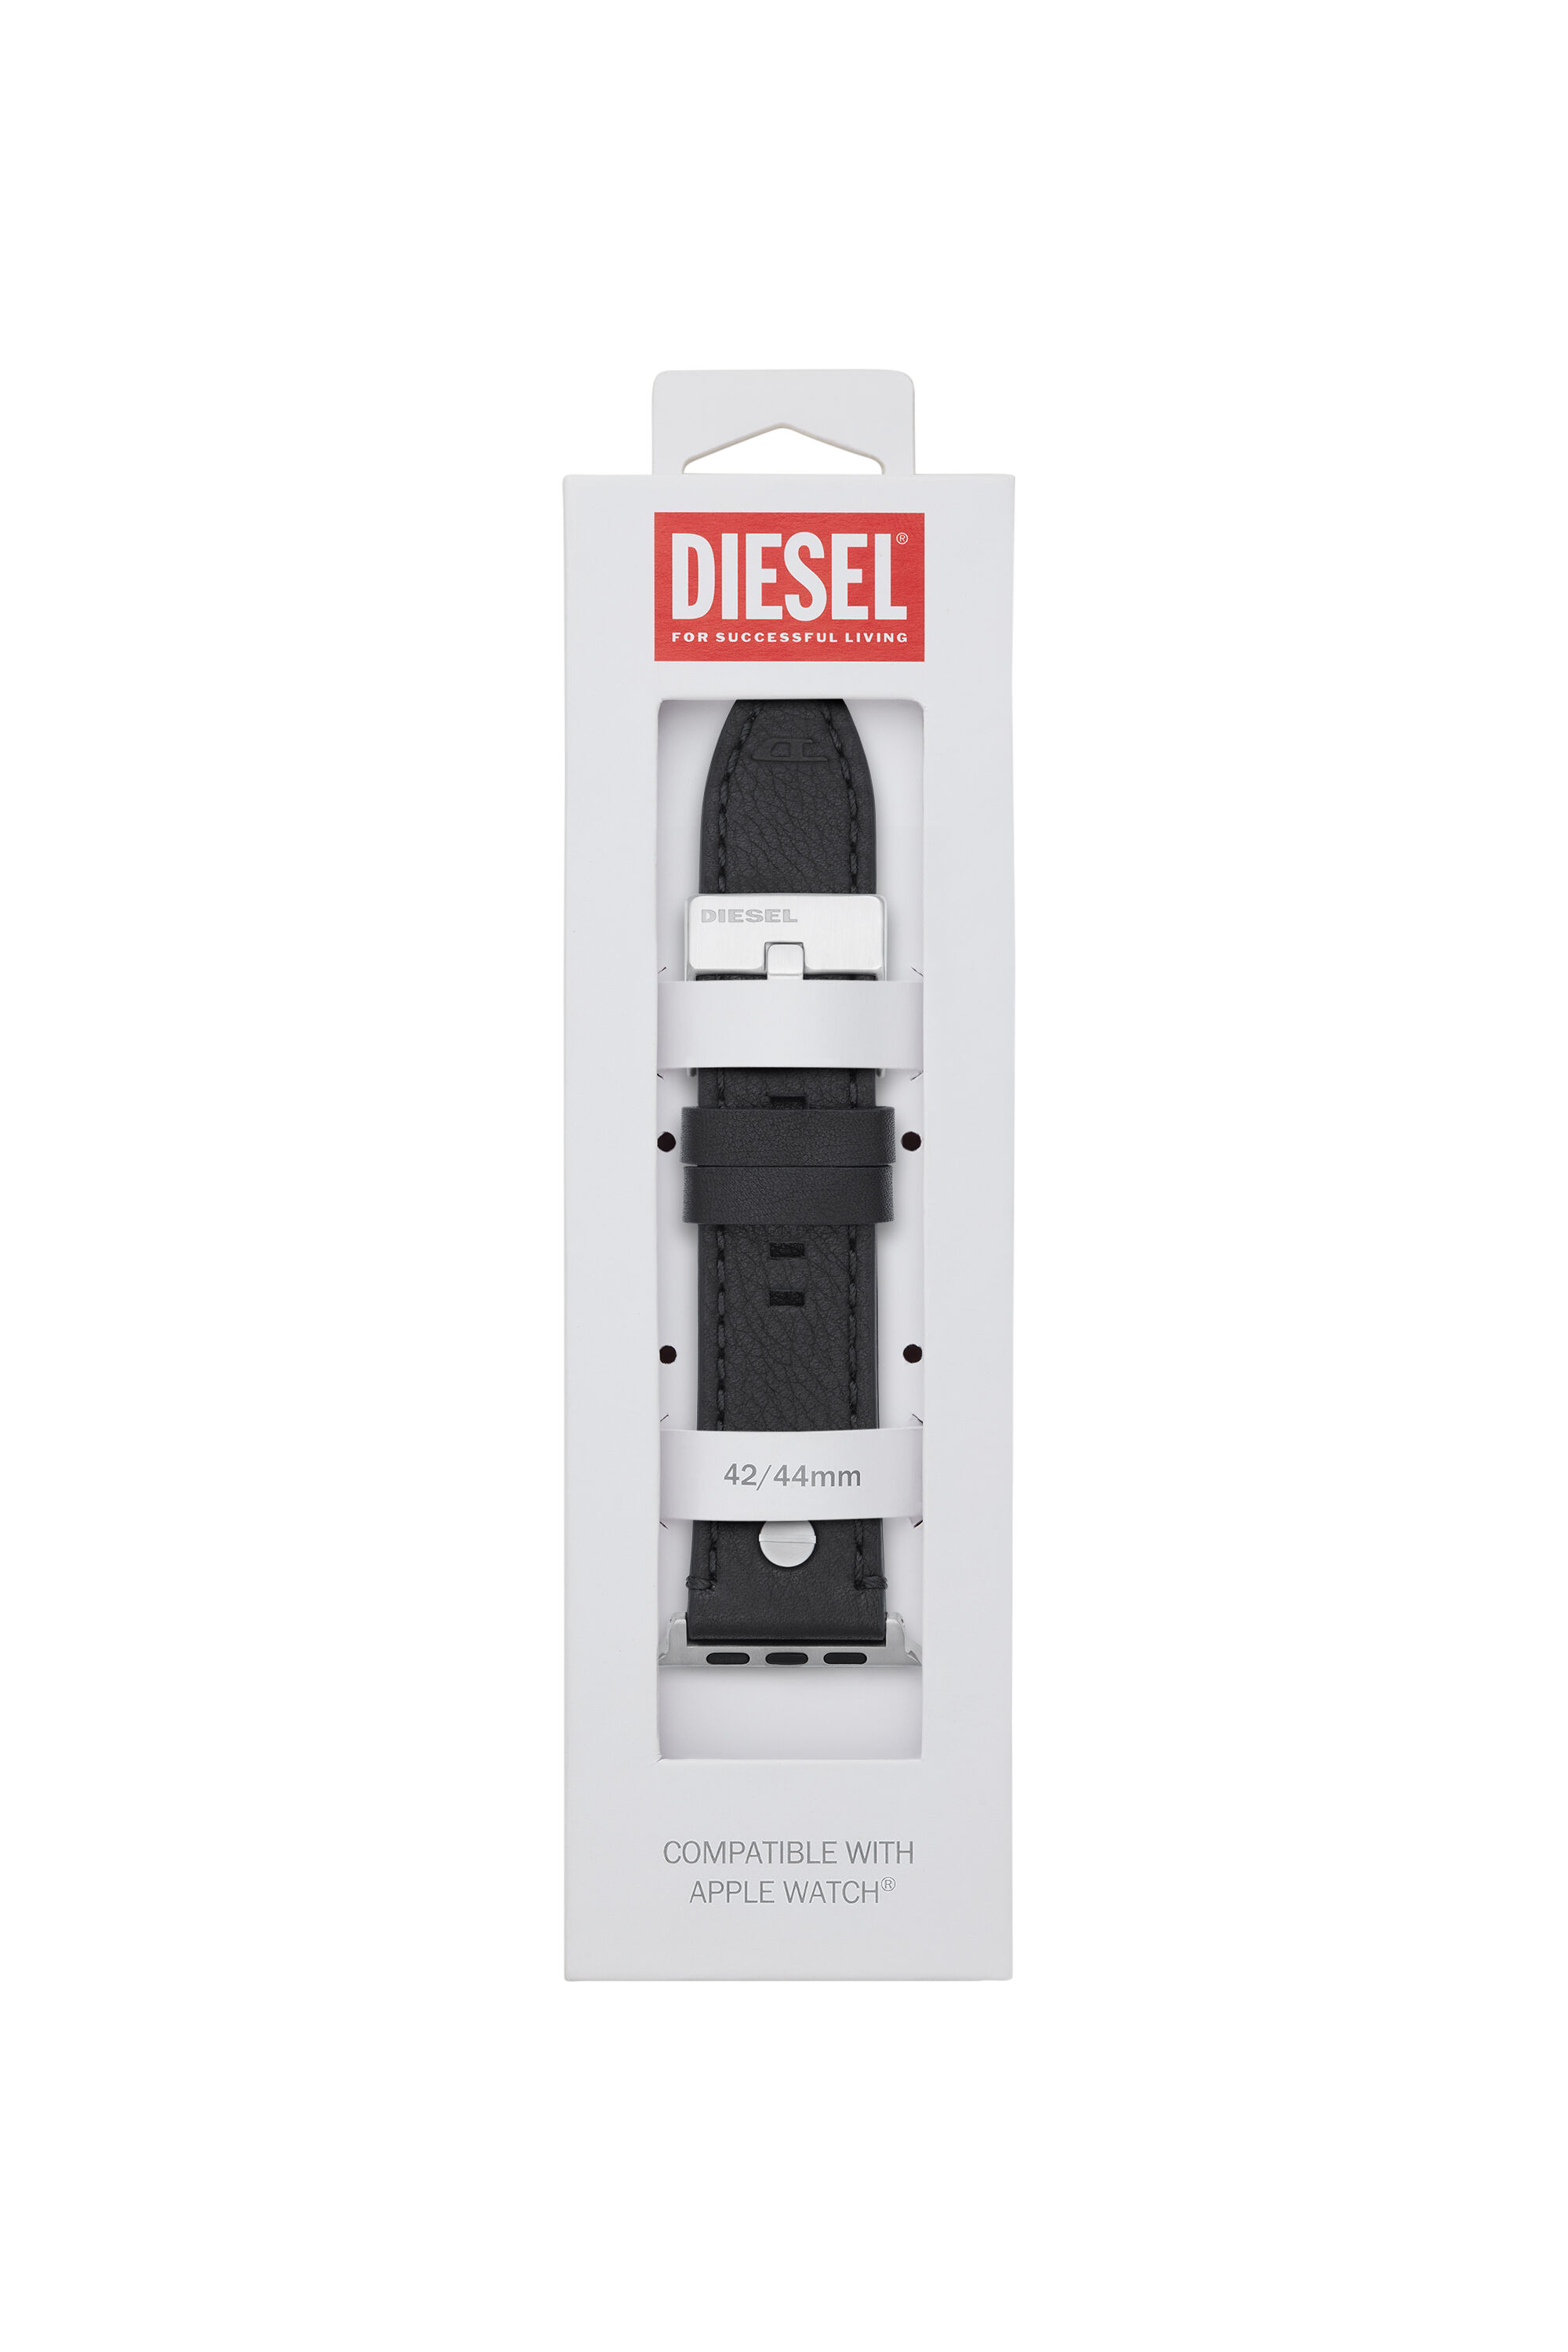 Diesel - DSS001, Schwarz - Image 2